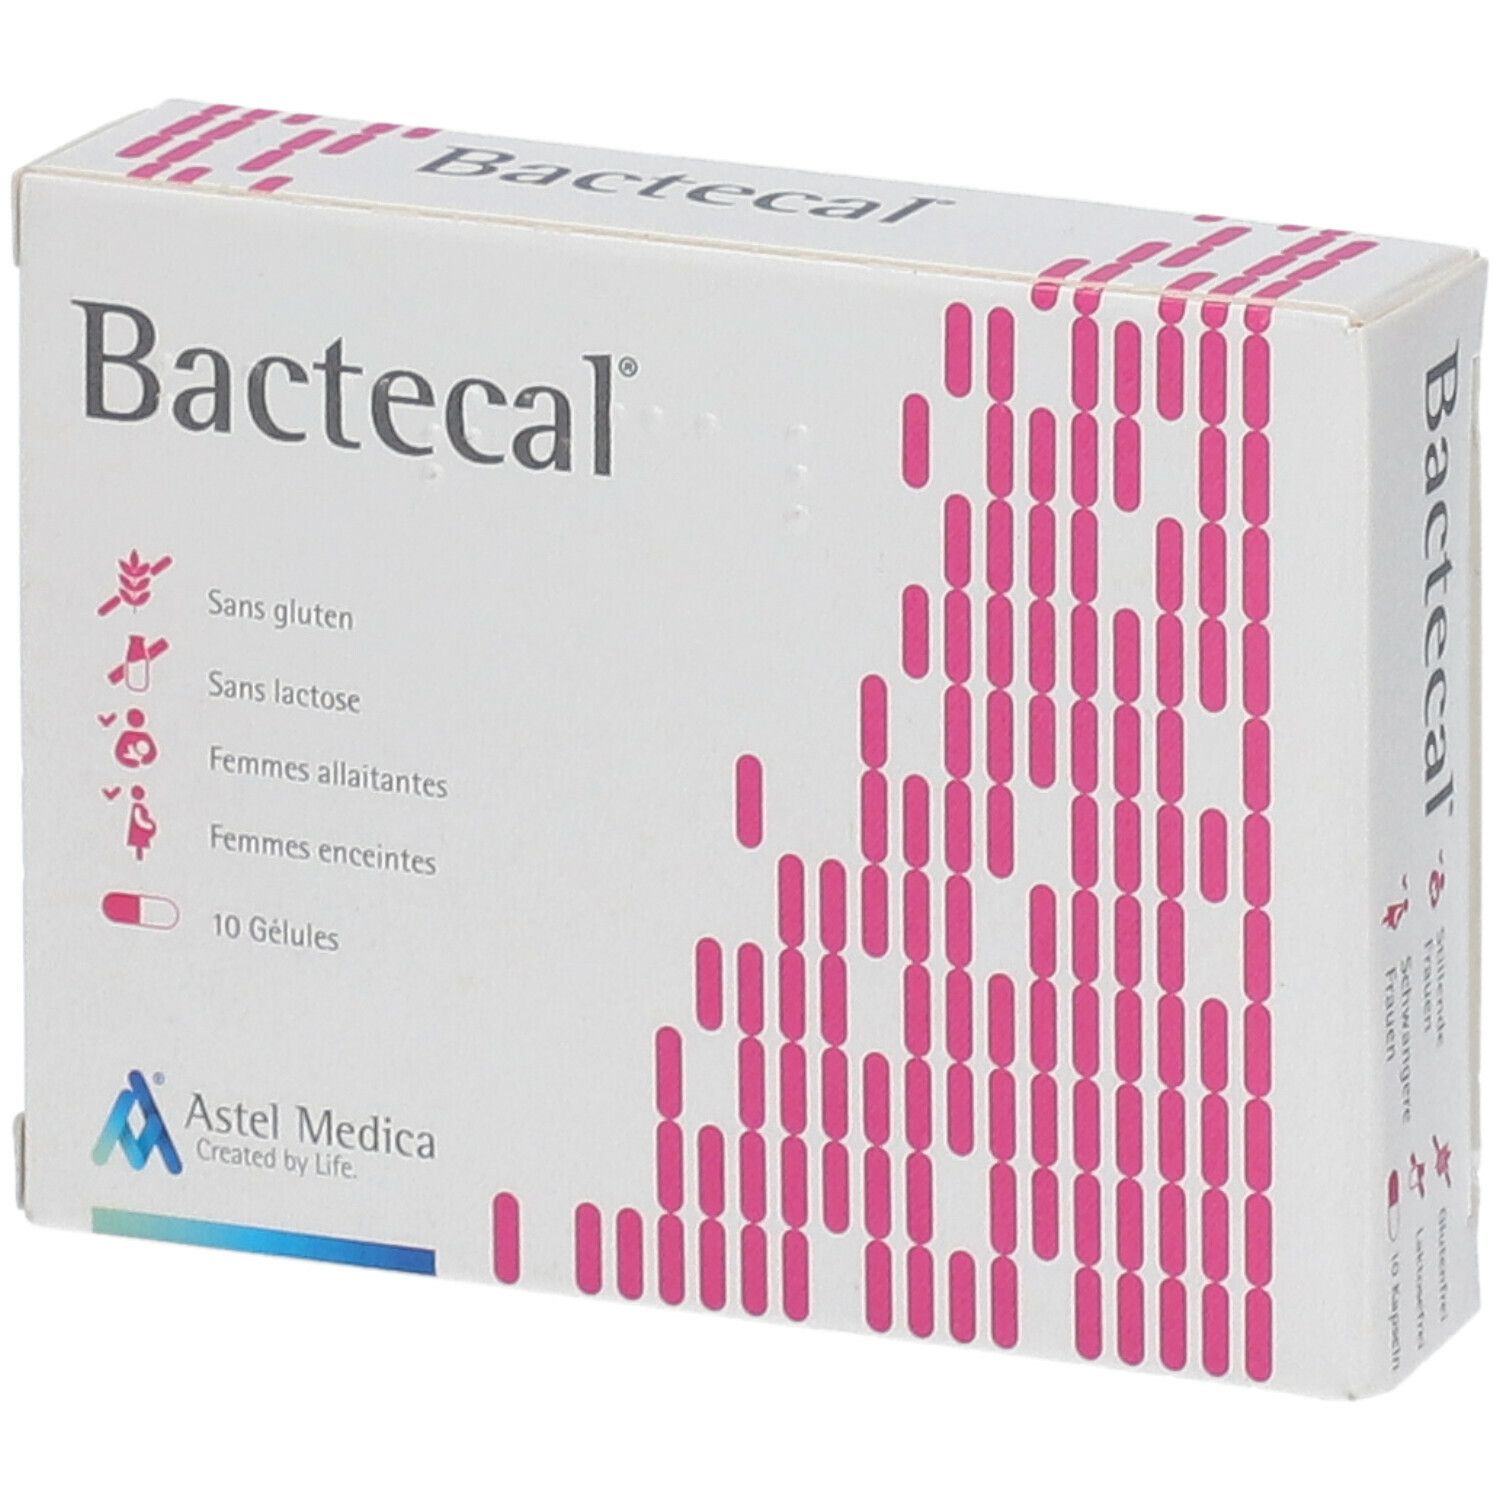 Bactecal®